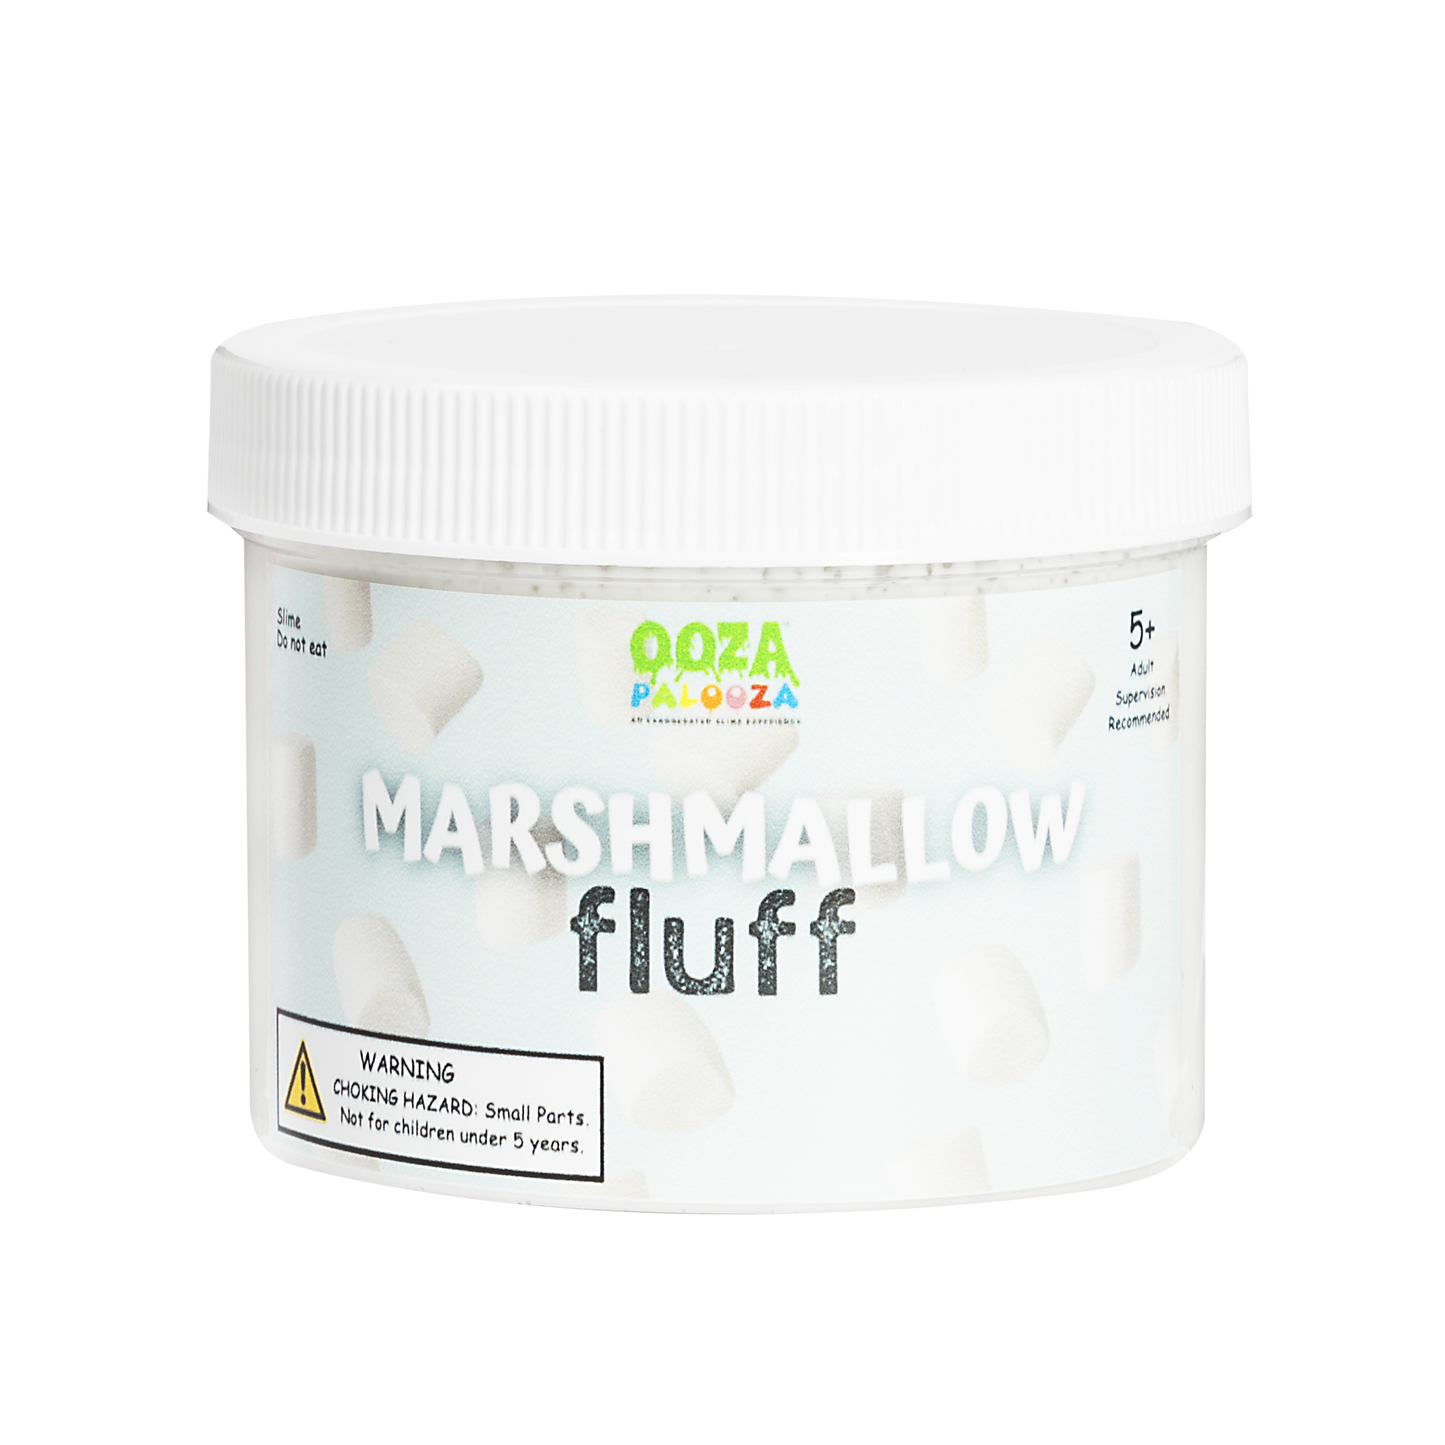 Marshmallow Fluff Slime